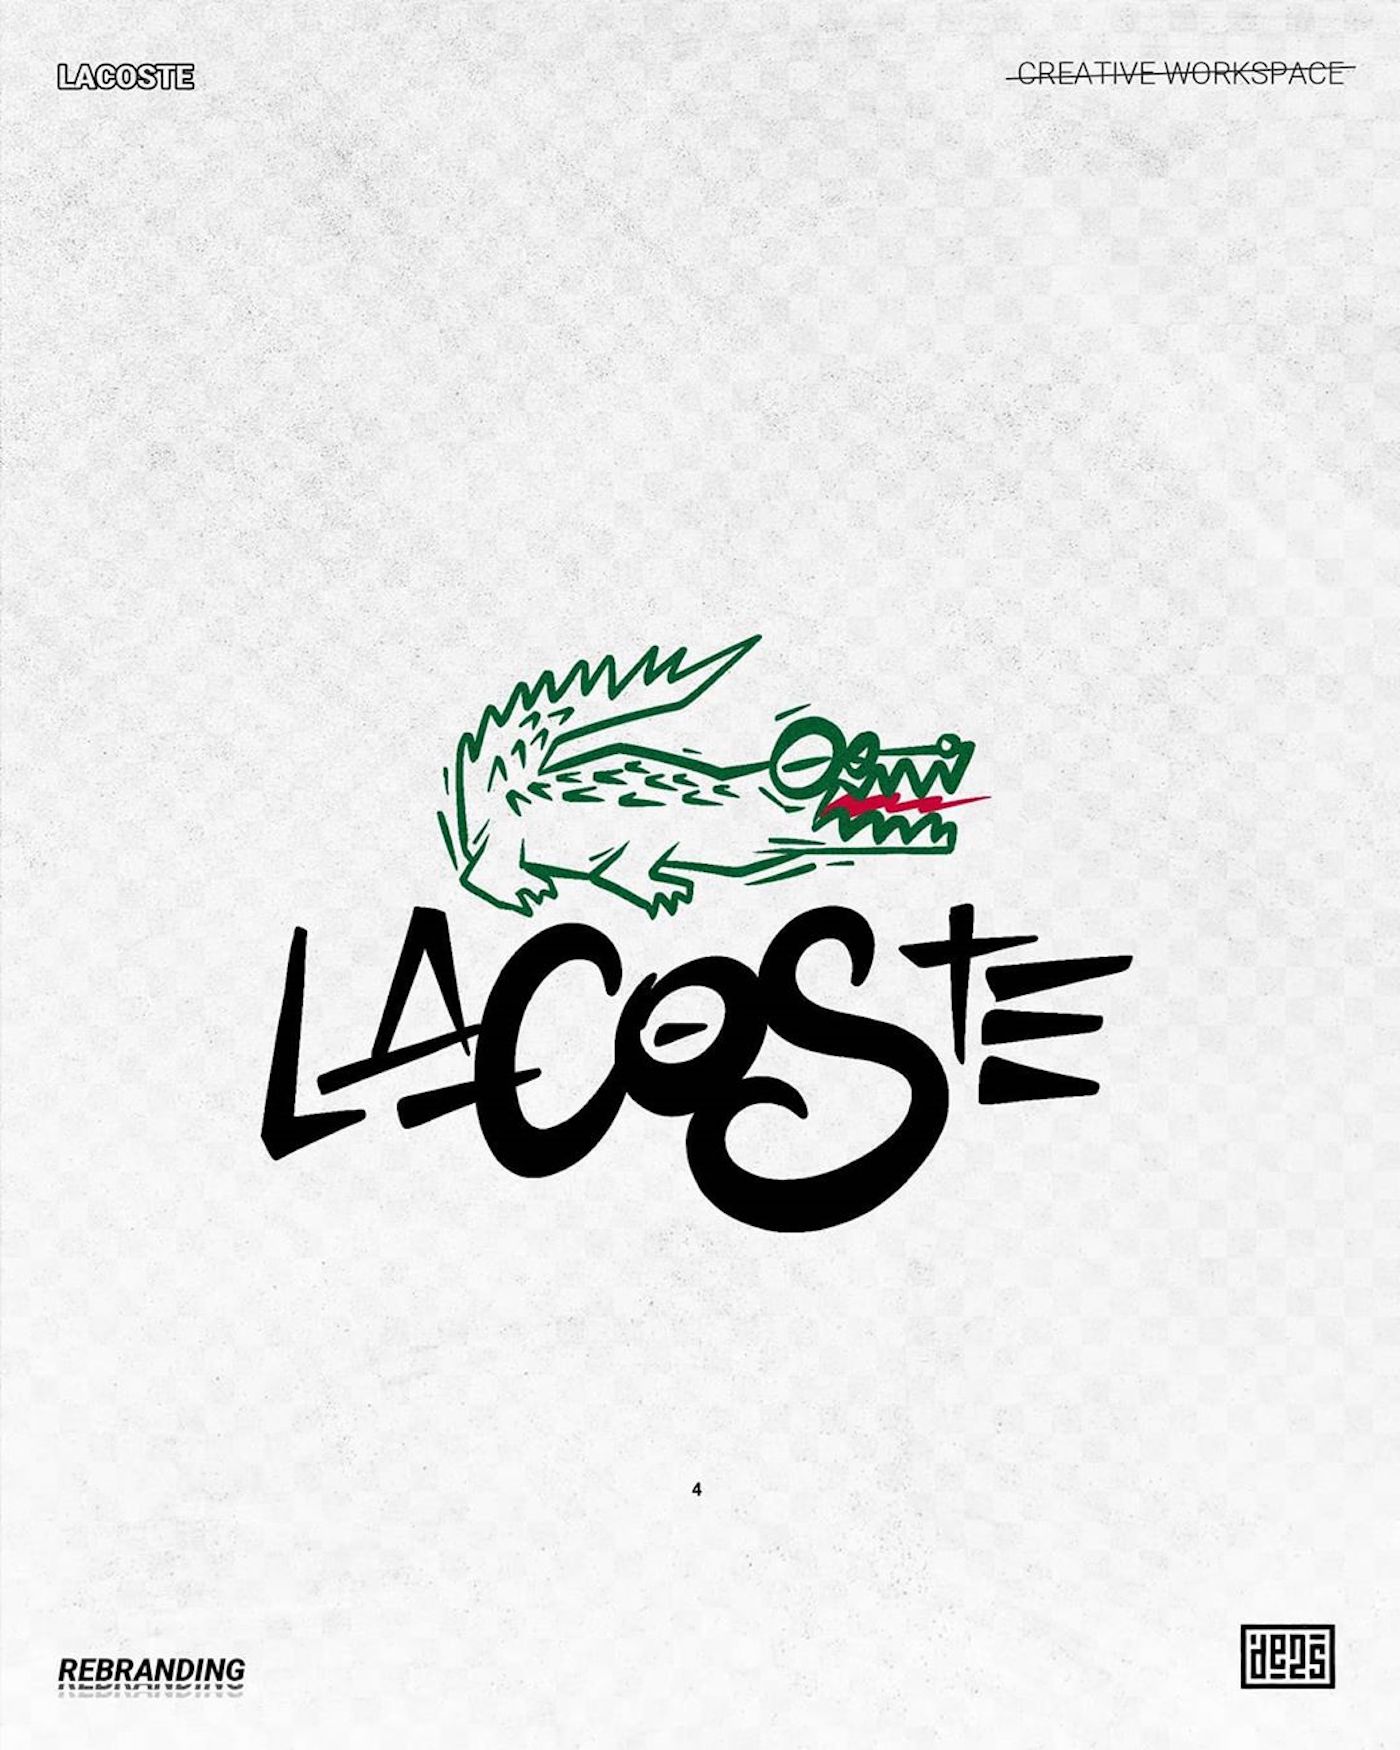 Logo de Lacoste rebrandé par de2s